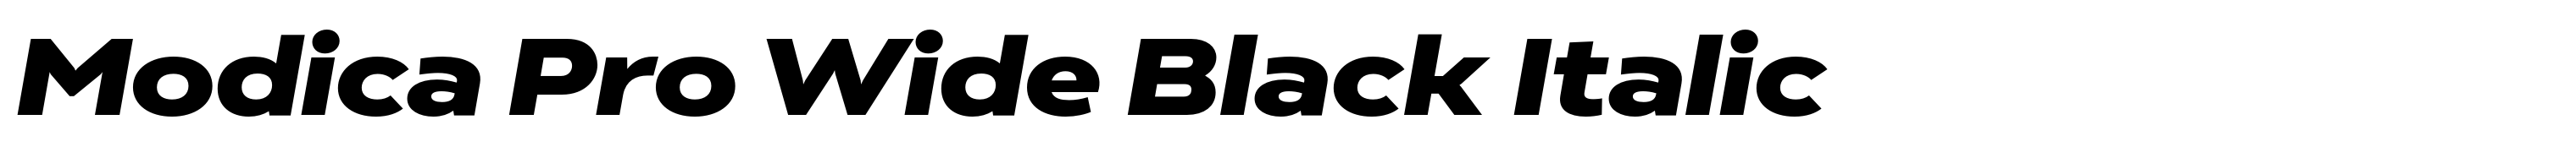 Modica Pro Wide Black Italic